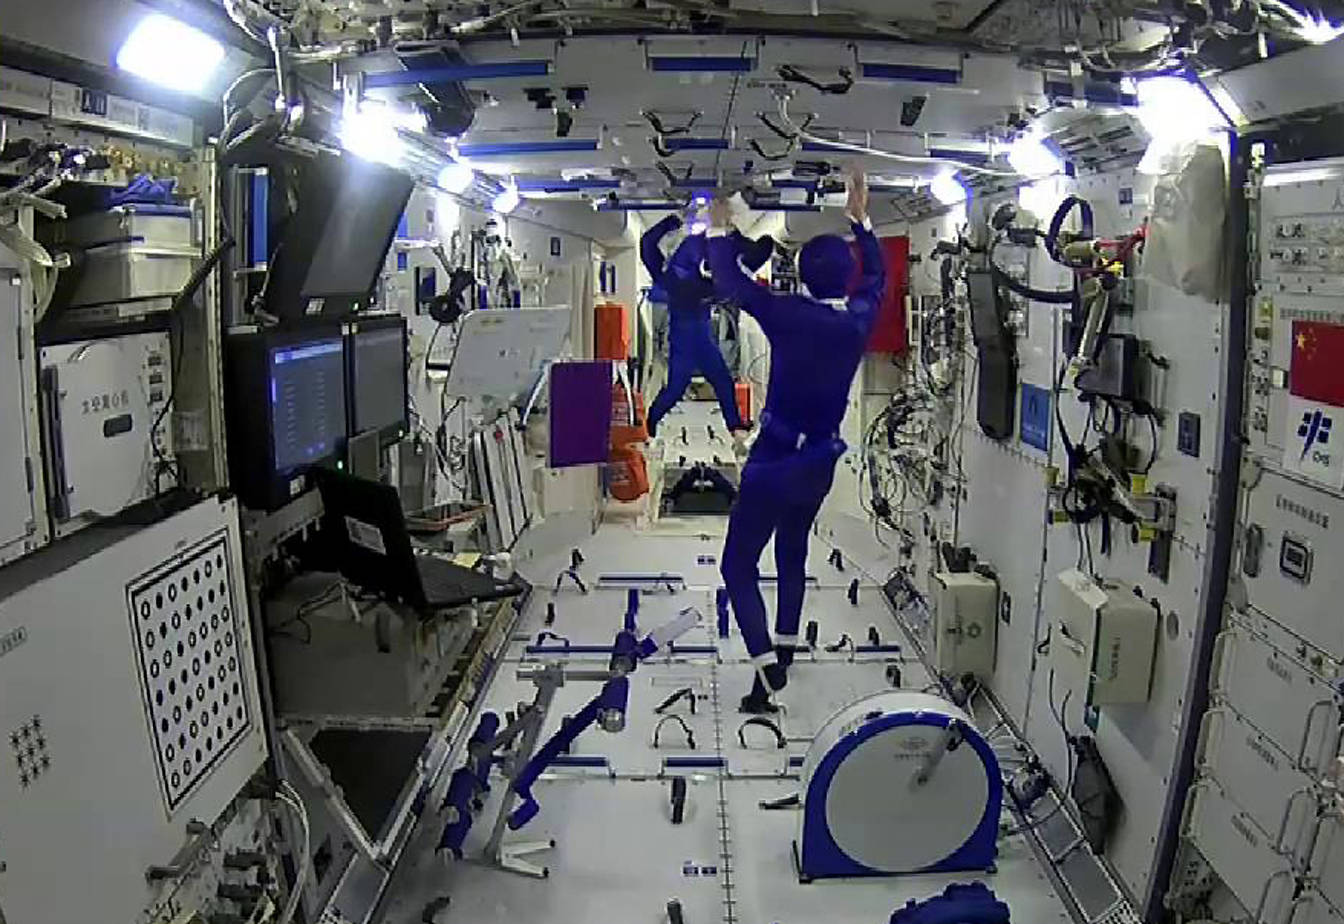 原创复盘天宫空间站首次太空出舱航天员兵分两路回舱前遇异常辐射